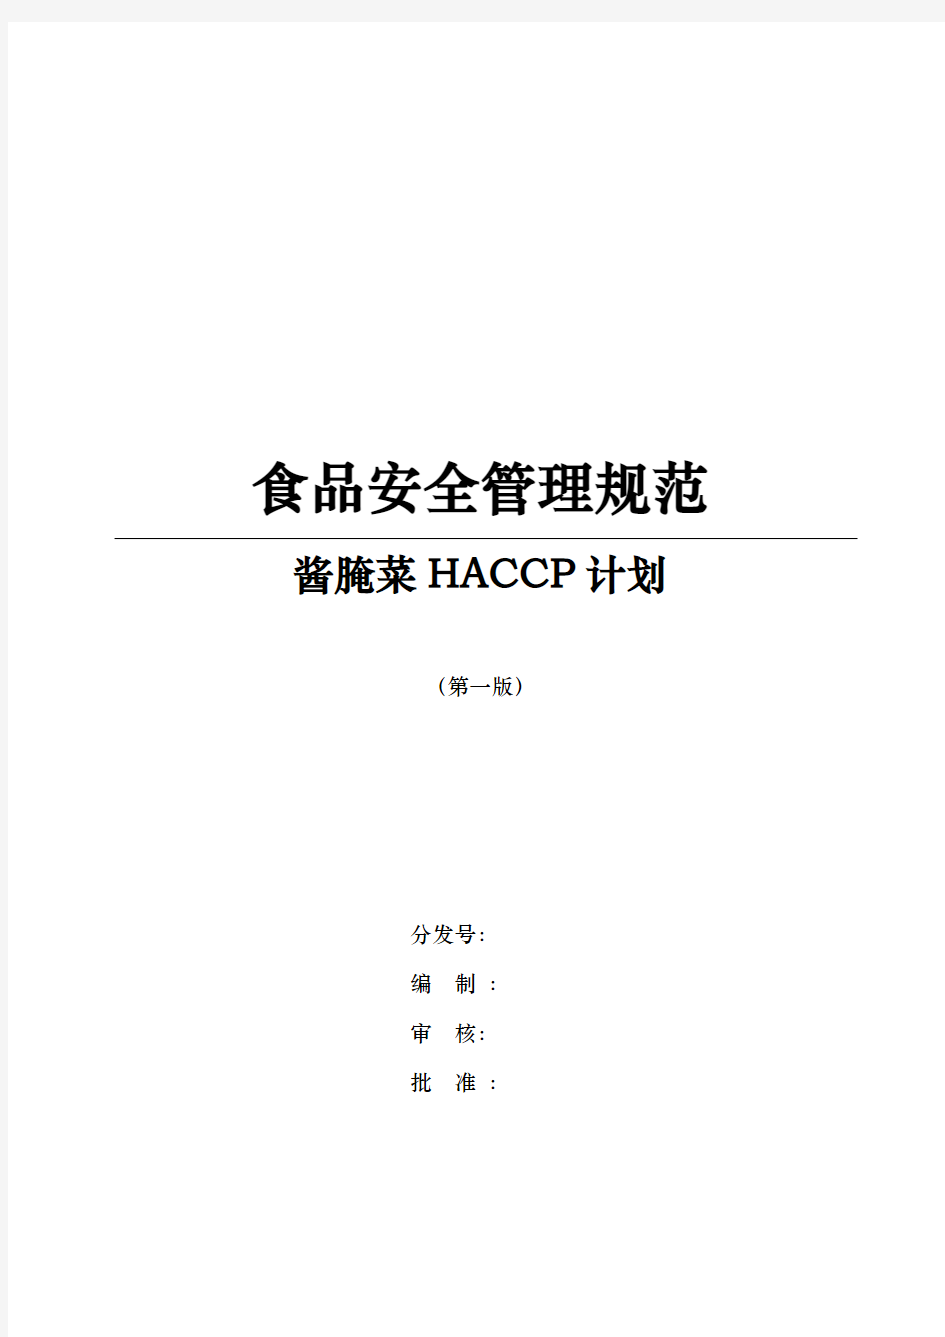 叶菜类酱腌菜的HACCP计划